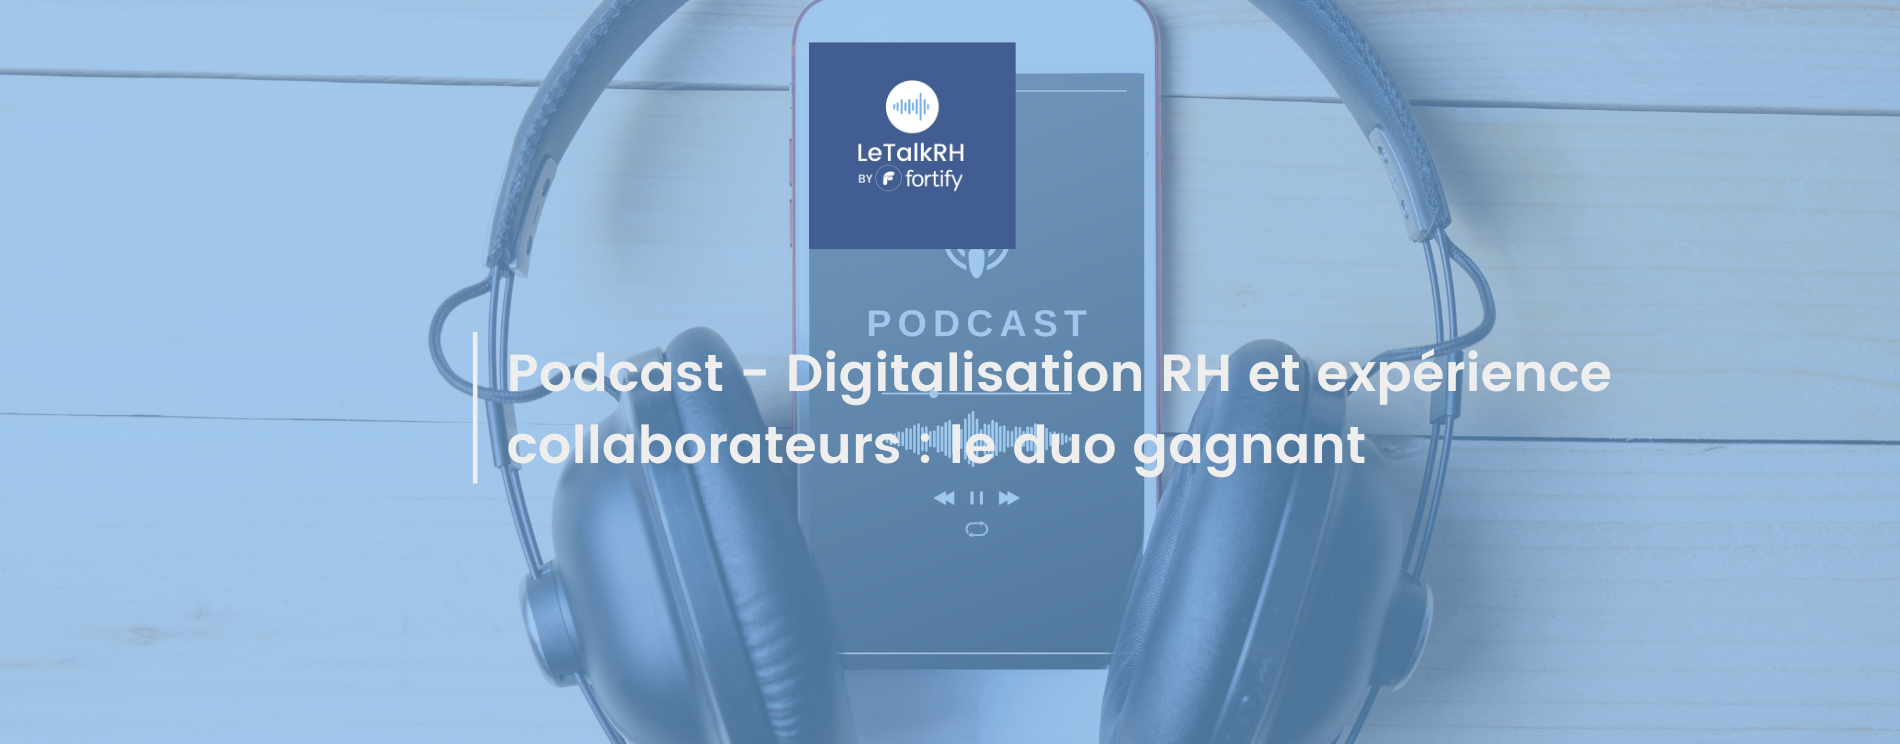 Podcast digitalisation RH et expérience collaborateurs